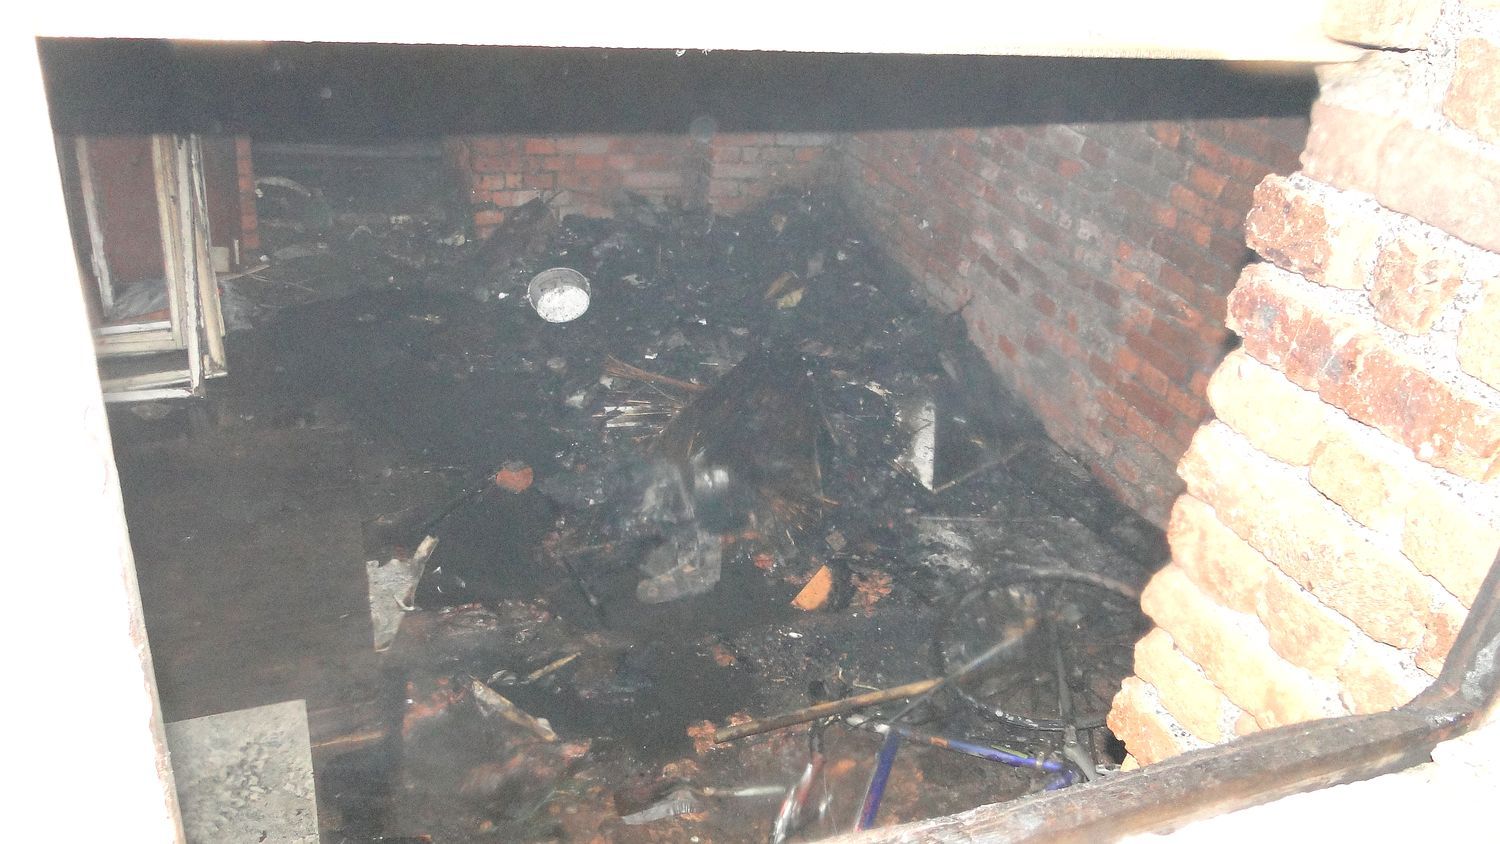 Oloví: Požár sklepu domu. Hasiči zachraňovali děti ze zakouřeného prostoru